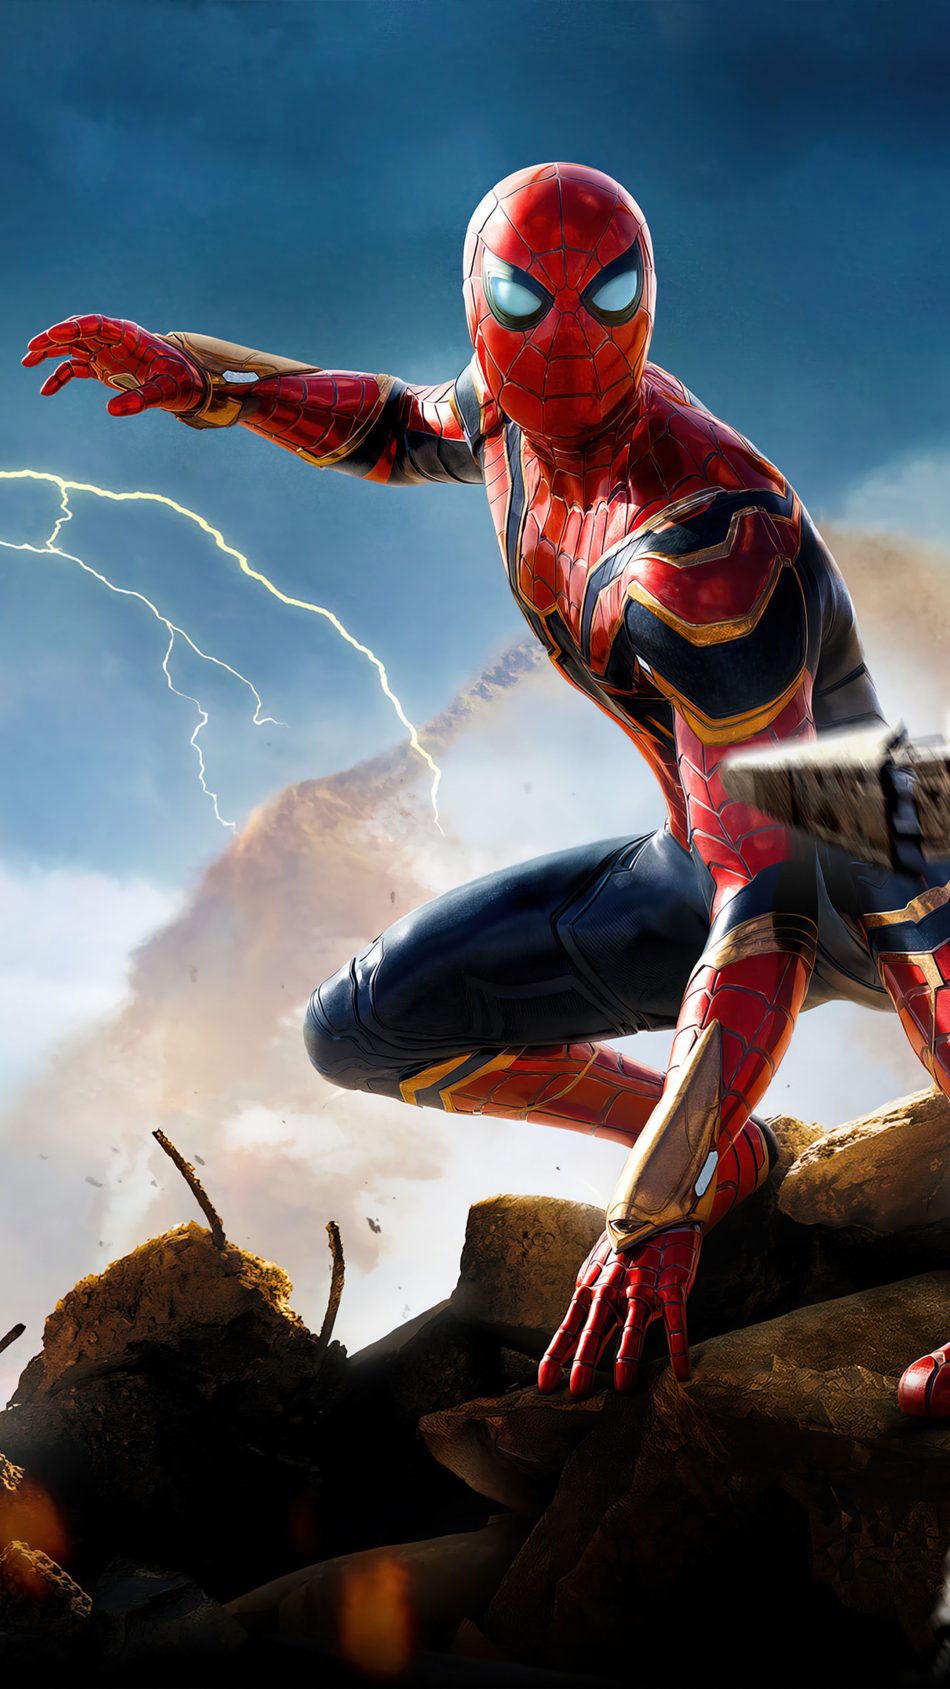 Ảnh Người Nhện Spider Man 3d Ngầu, Cute, Đẹp Sắc Nét - Mầm Non Nam Hưng